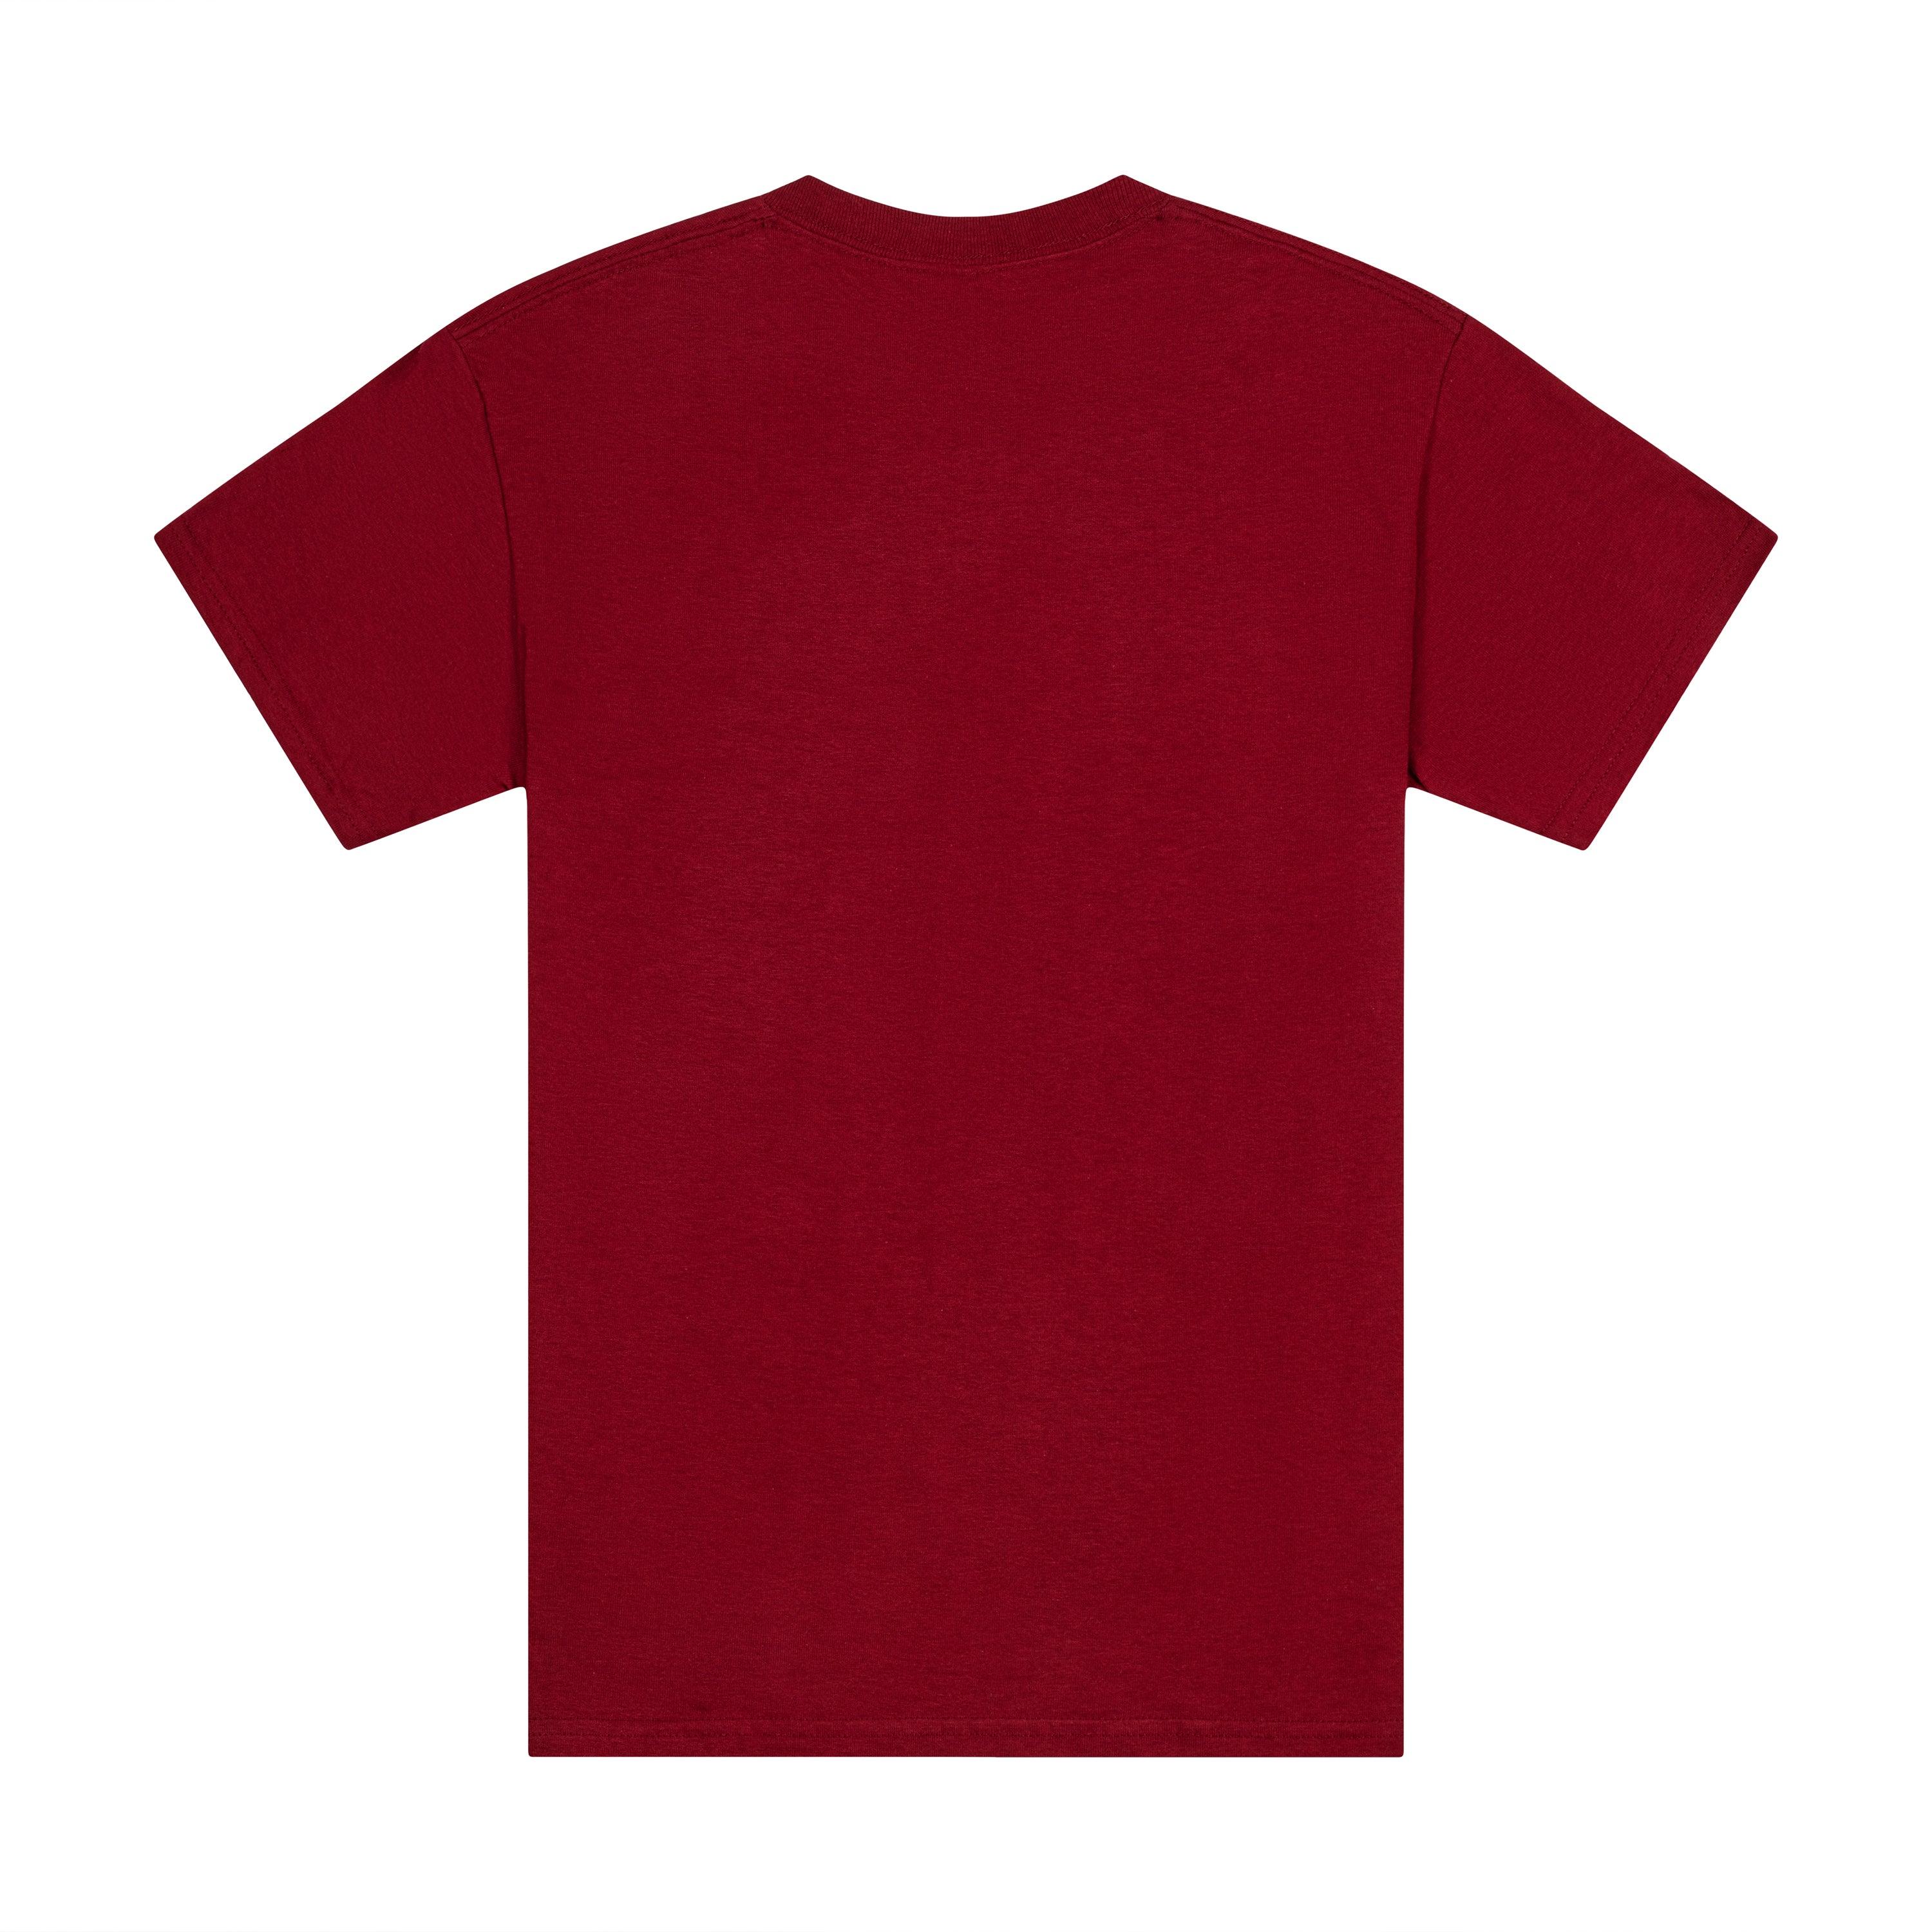 Harvard Grandma T-Shirt – The Harvard Shop